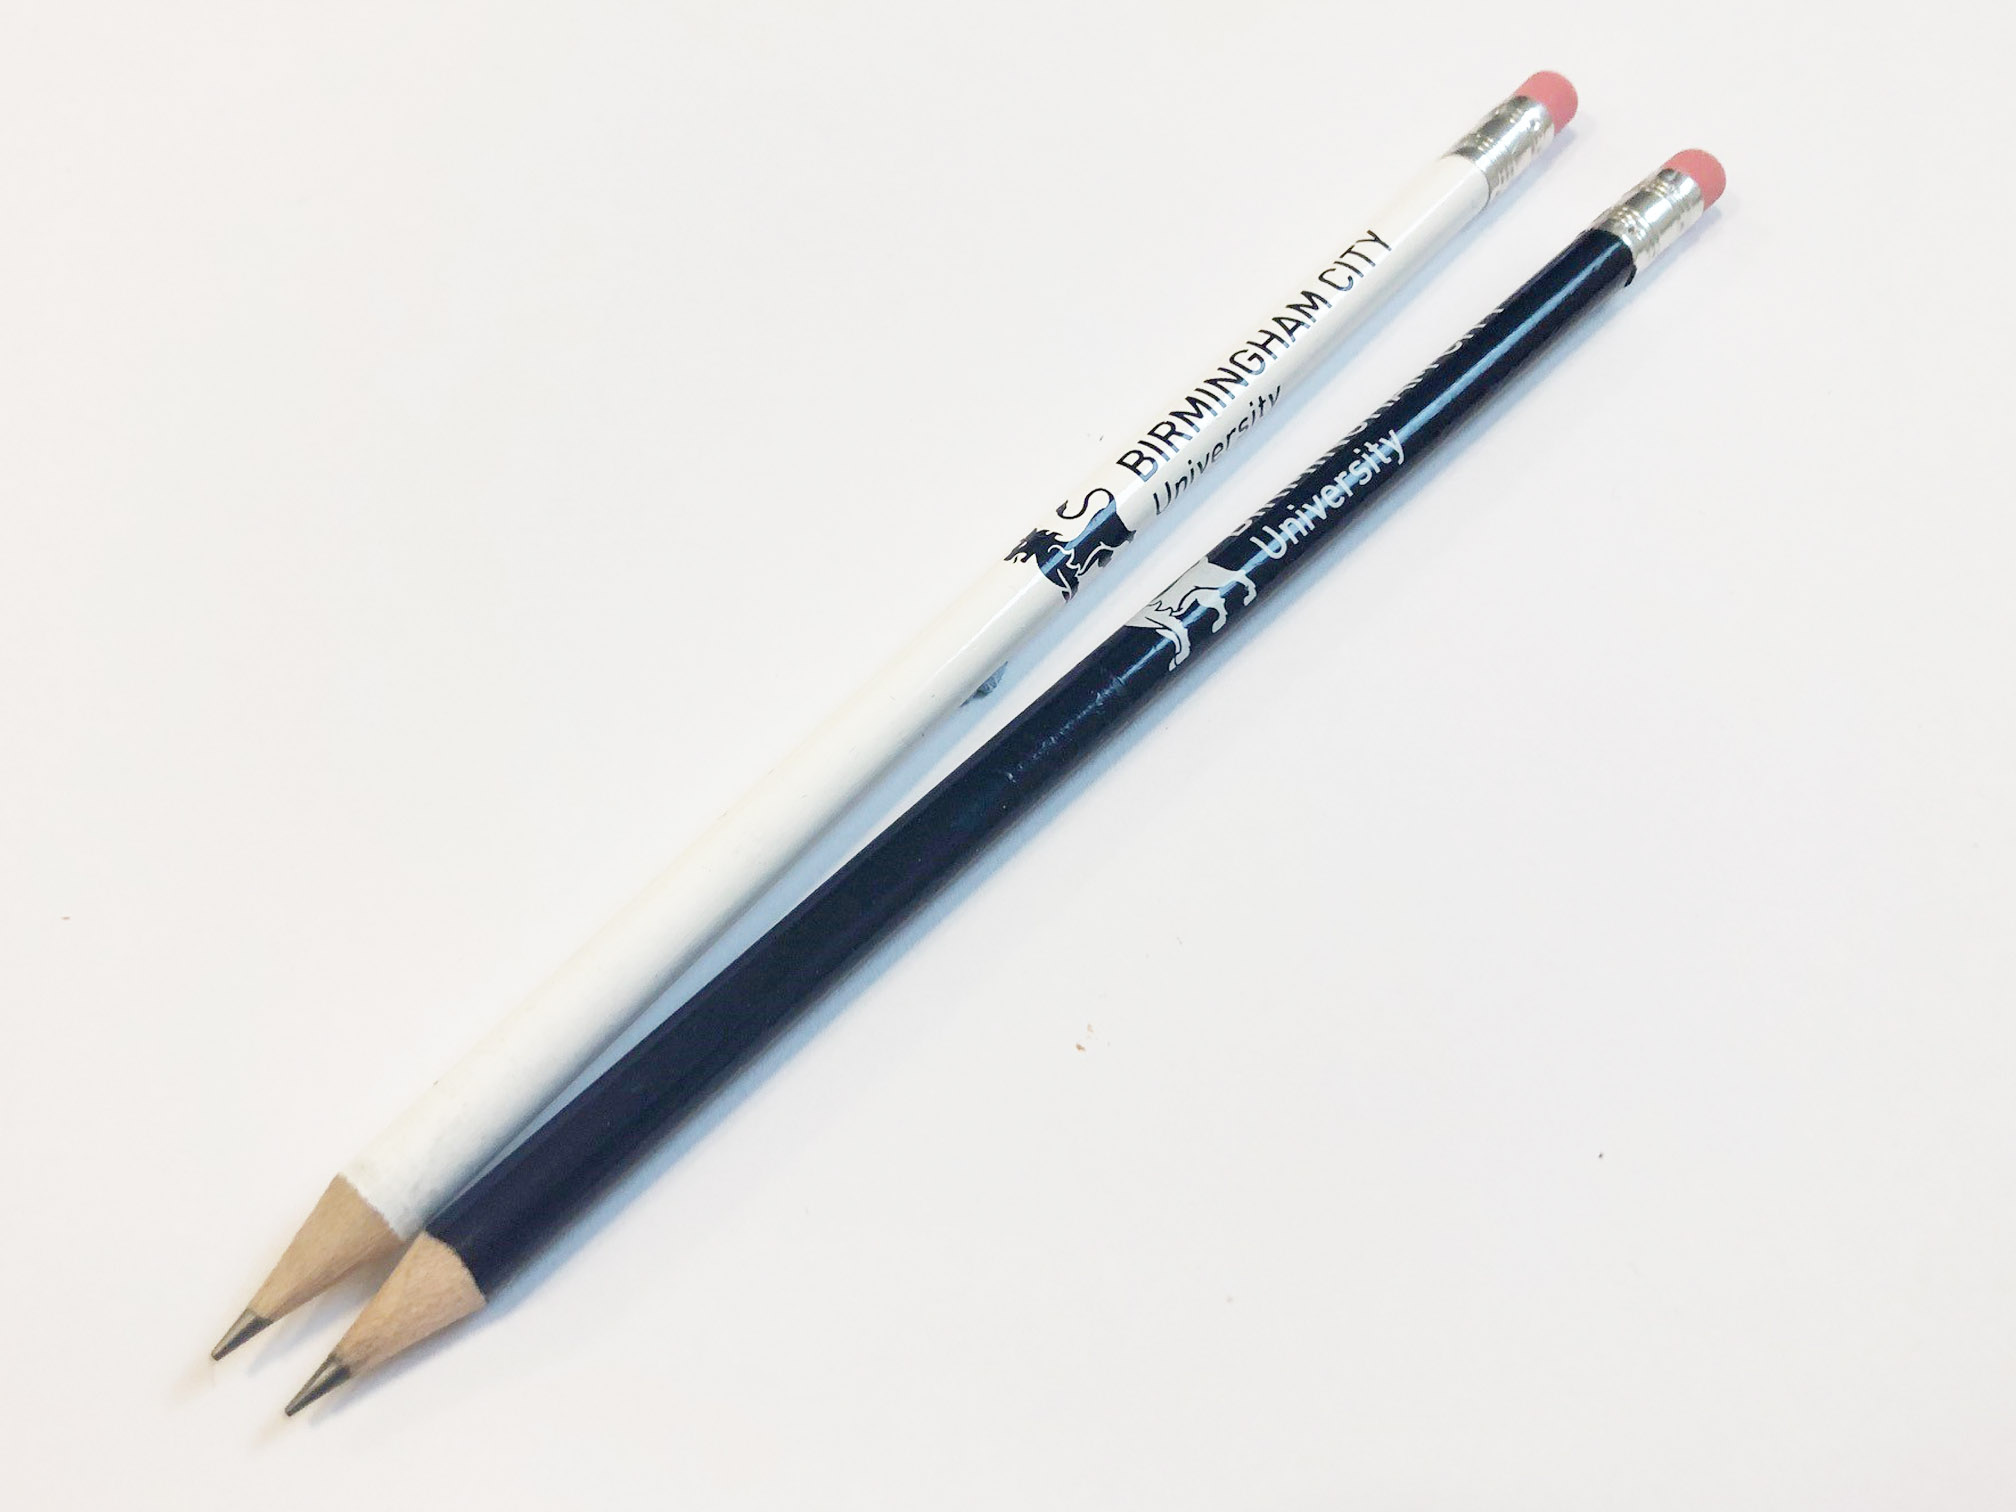 BCU branded pencils